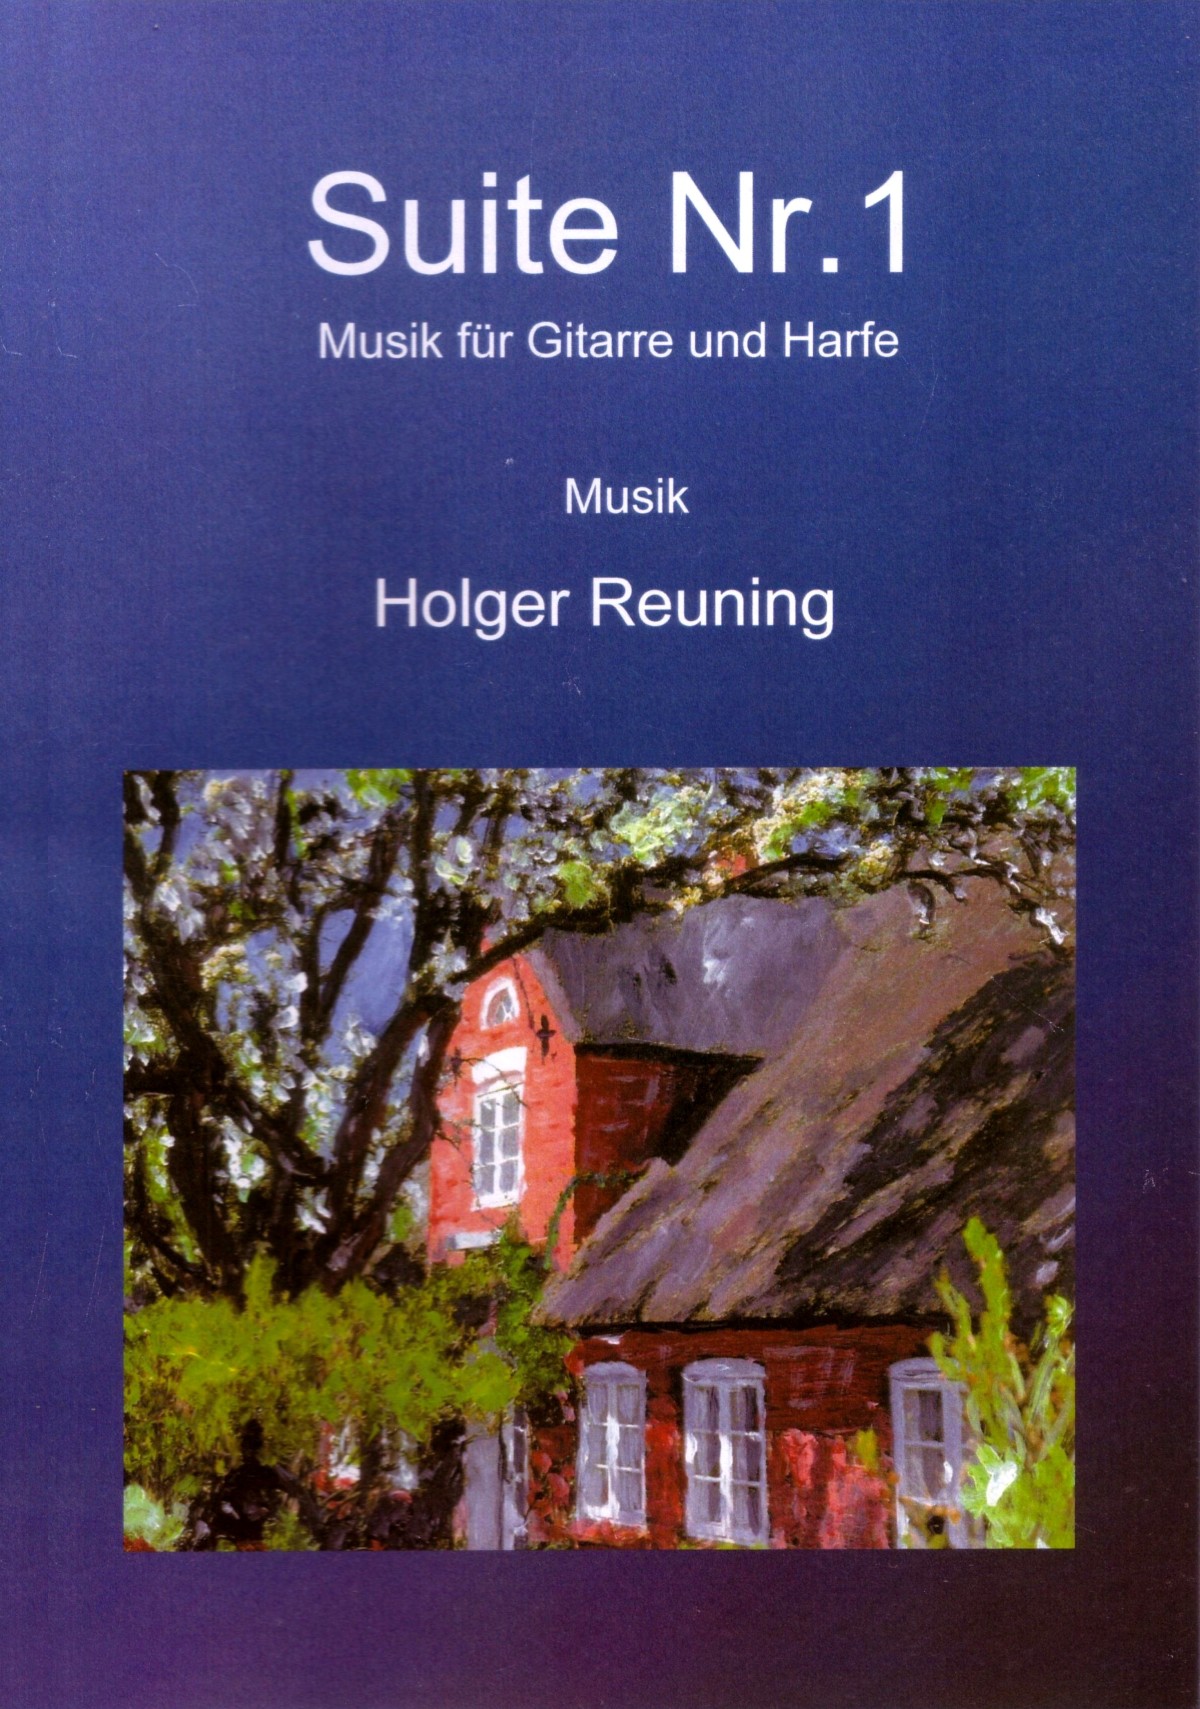 Gitarre Harfe Suite Holger Reuning